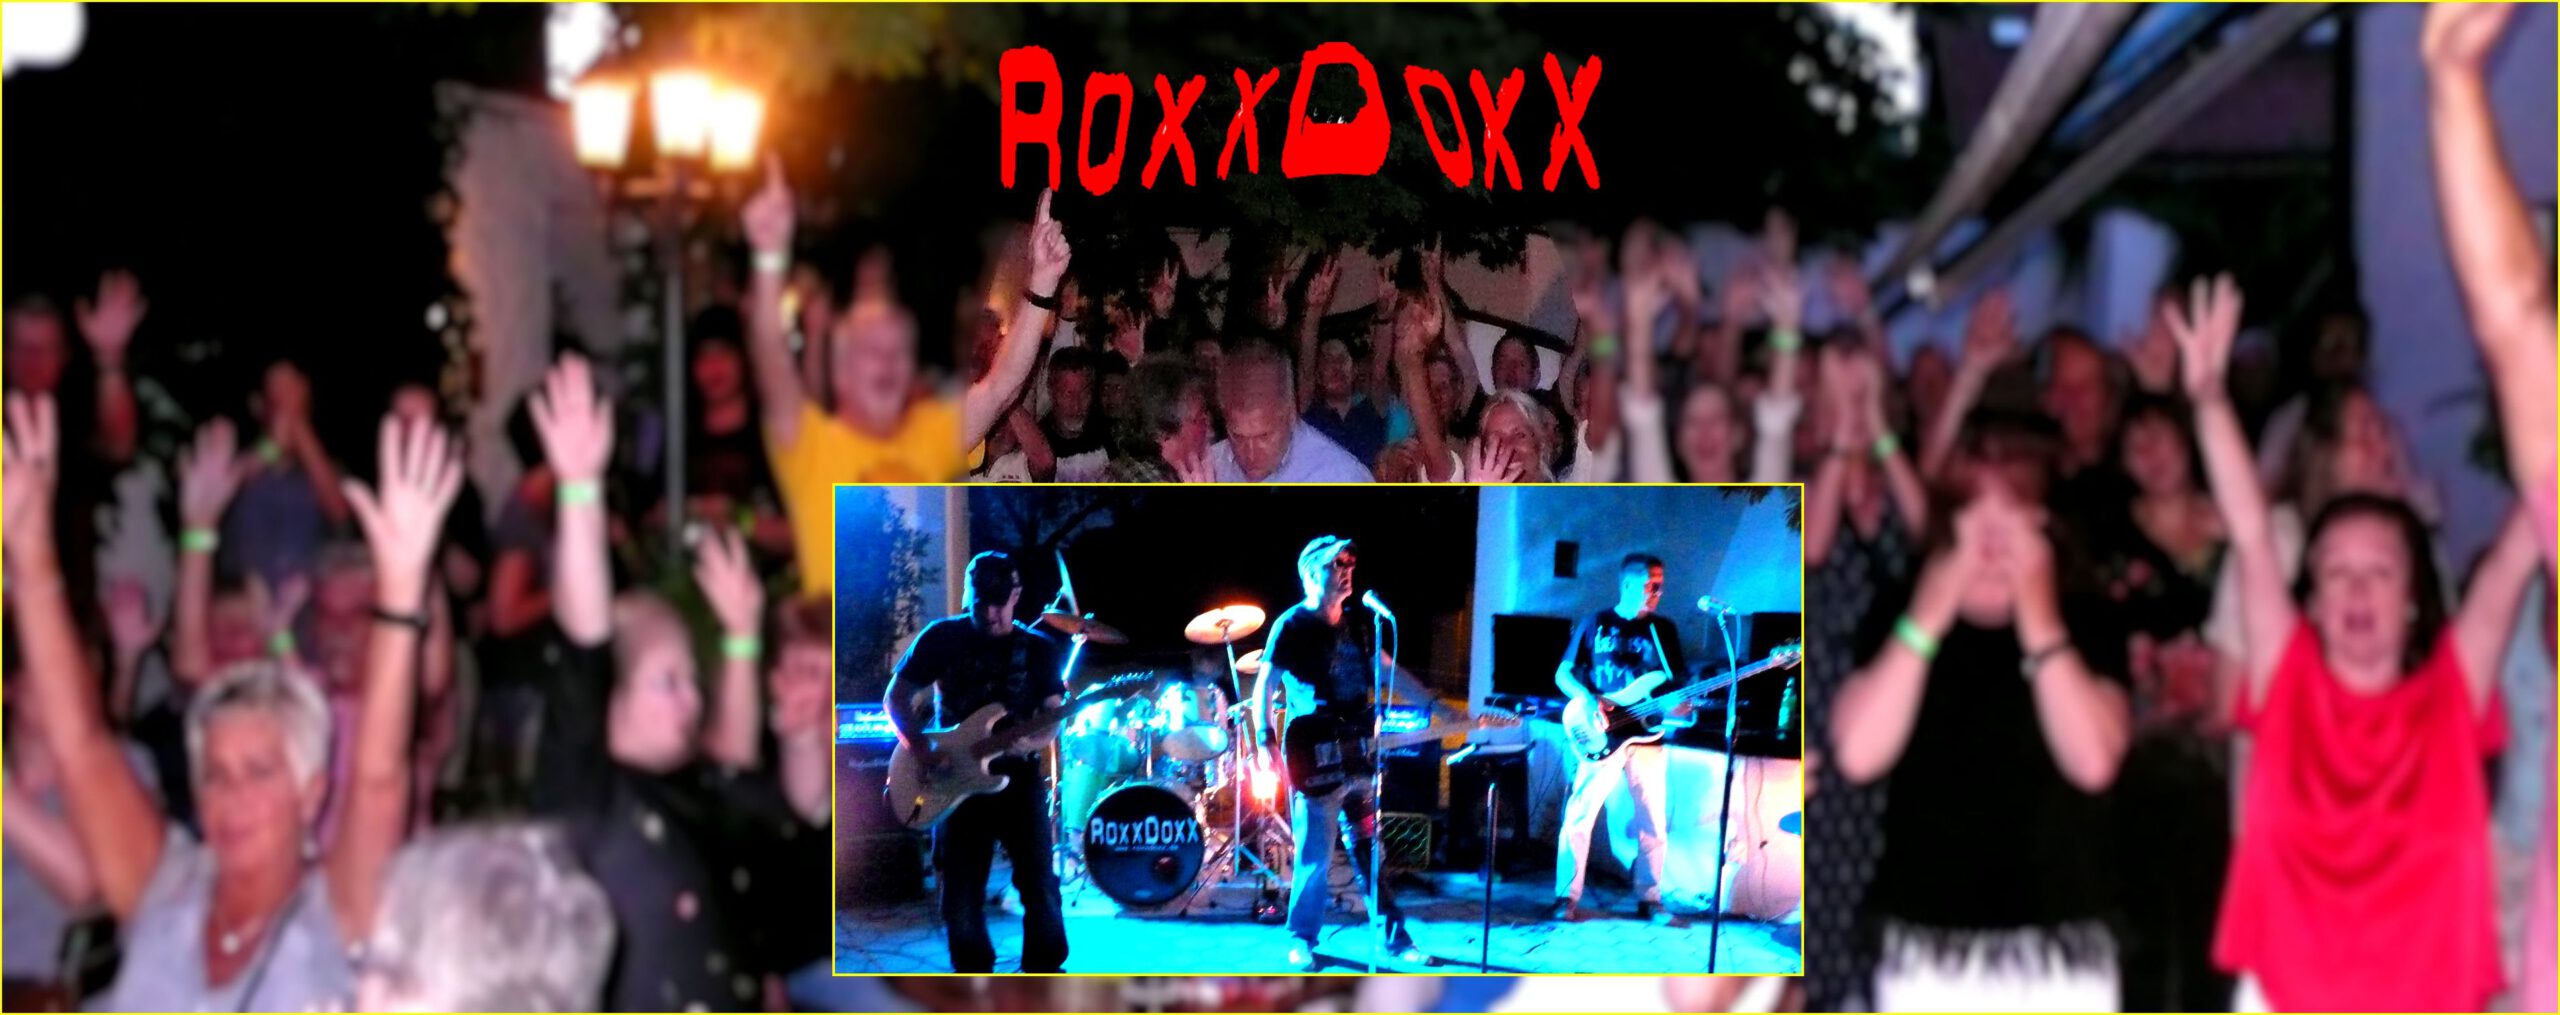 RoxxDoxx